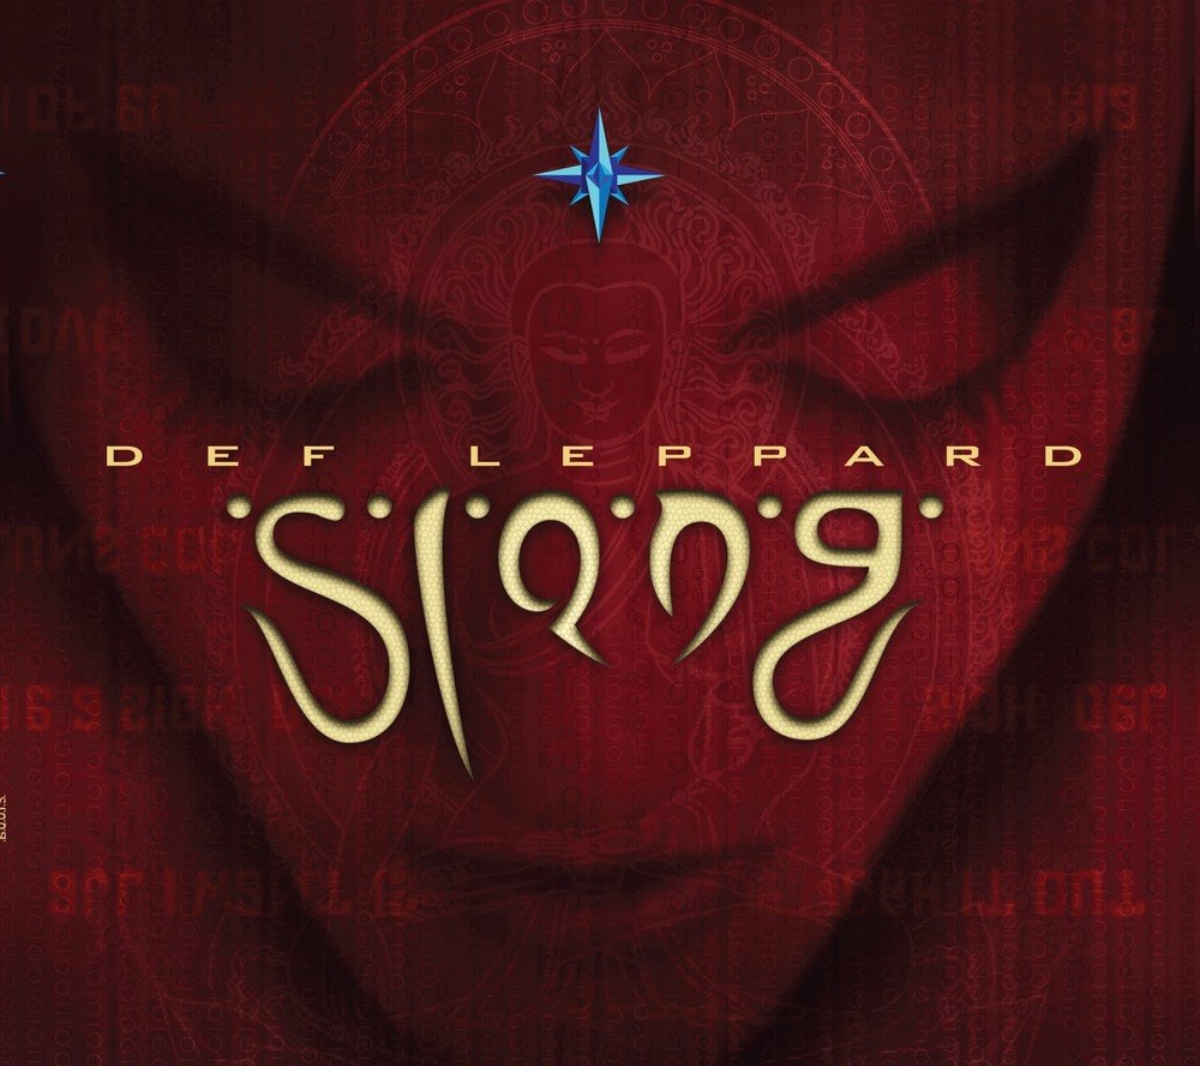 La portada del álbum 'Slang' de Def Leppard